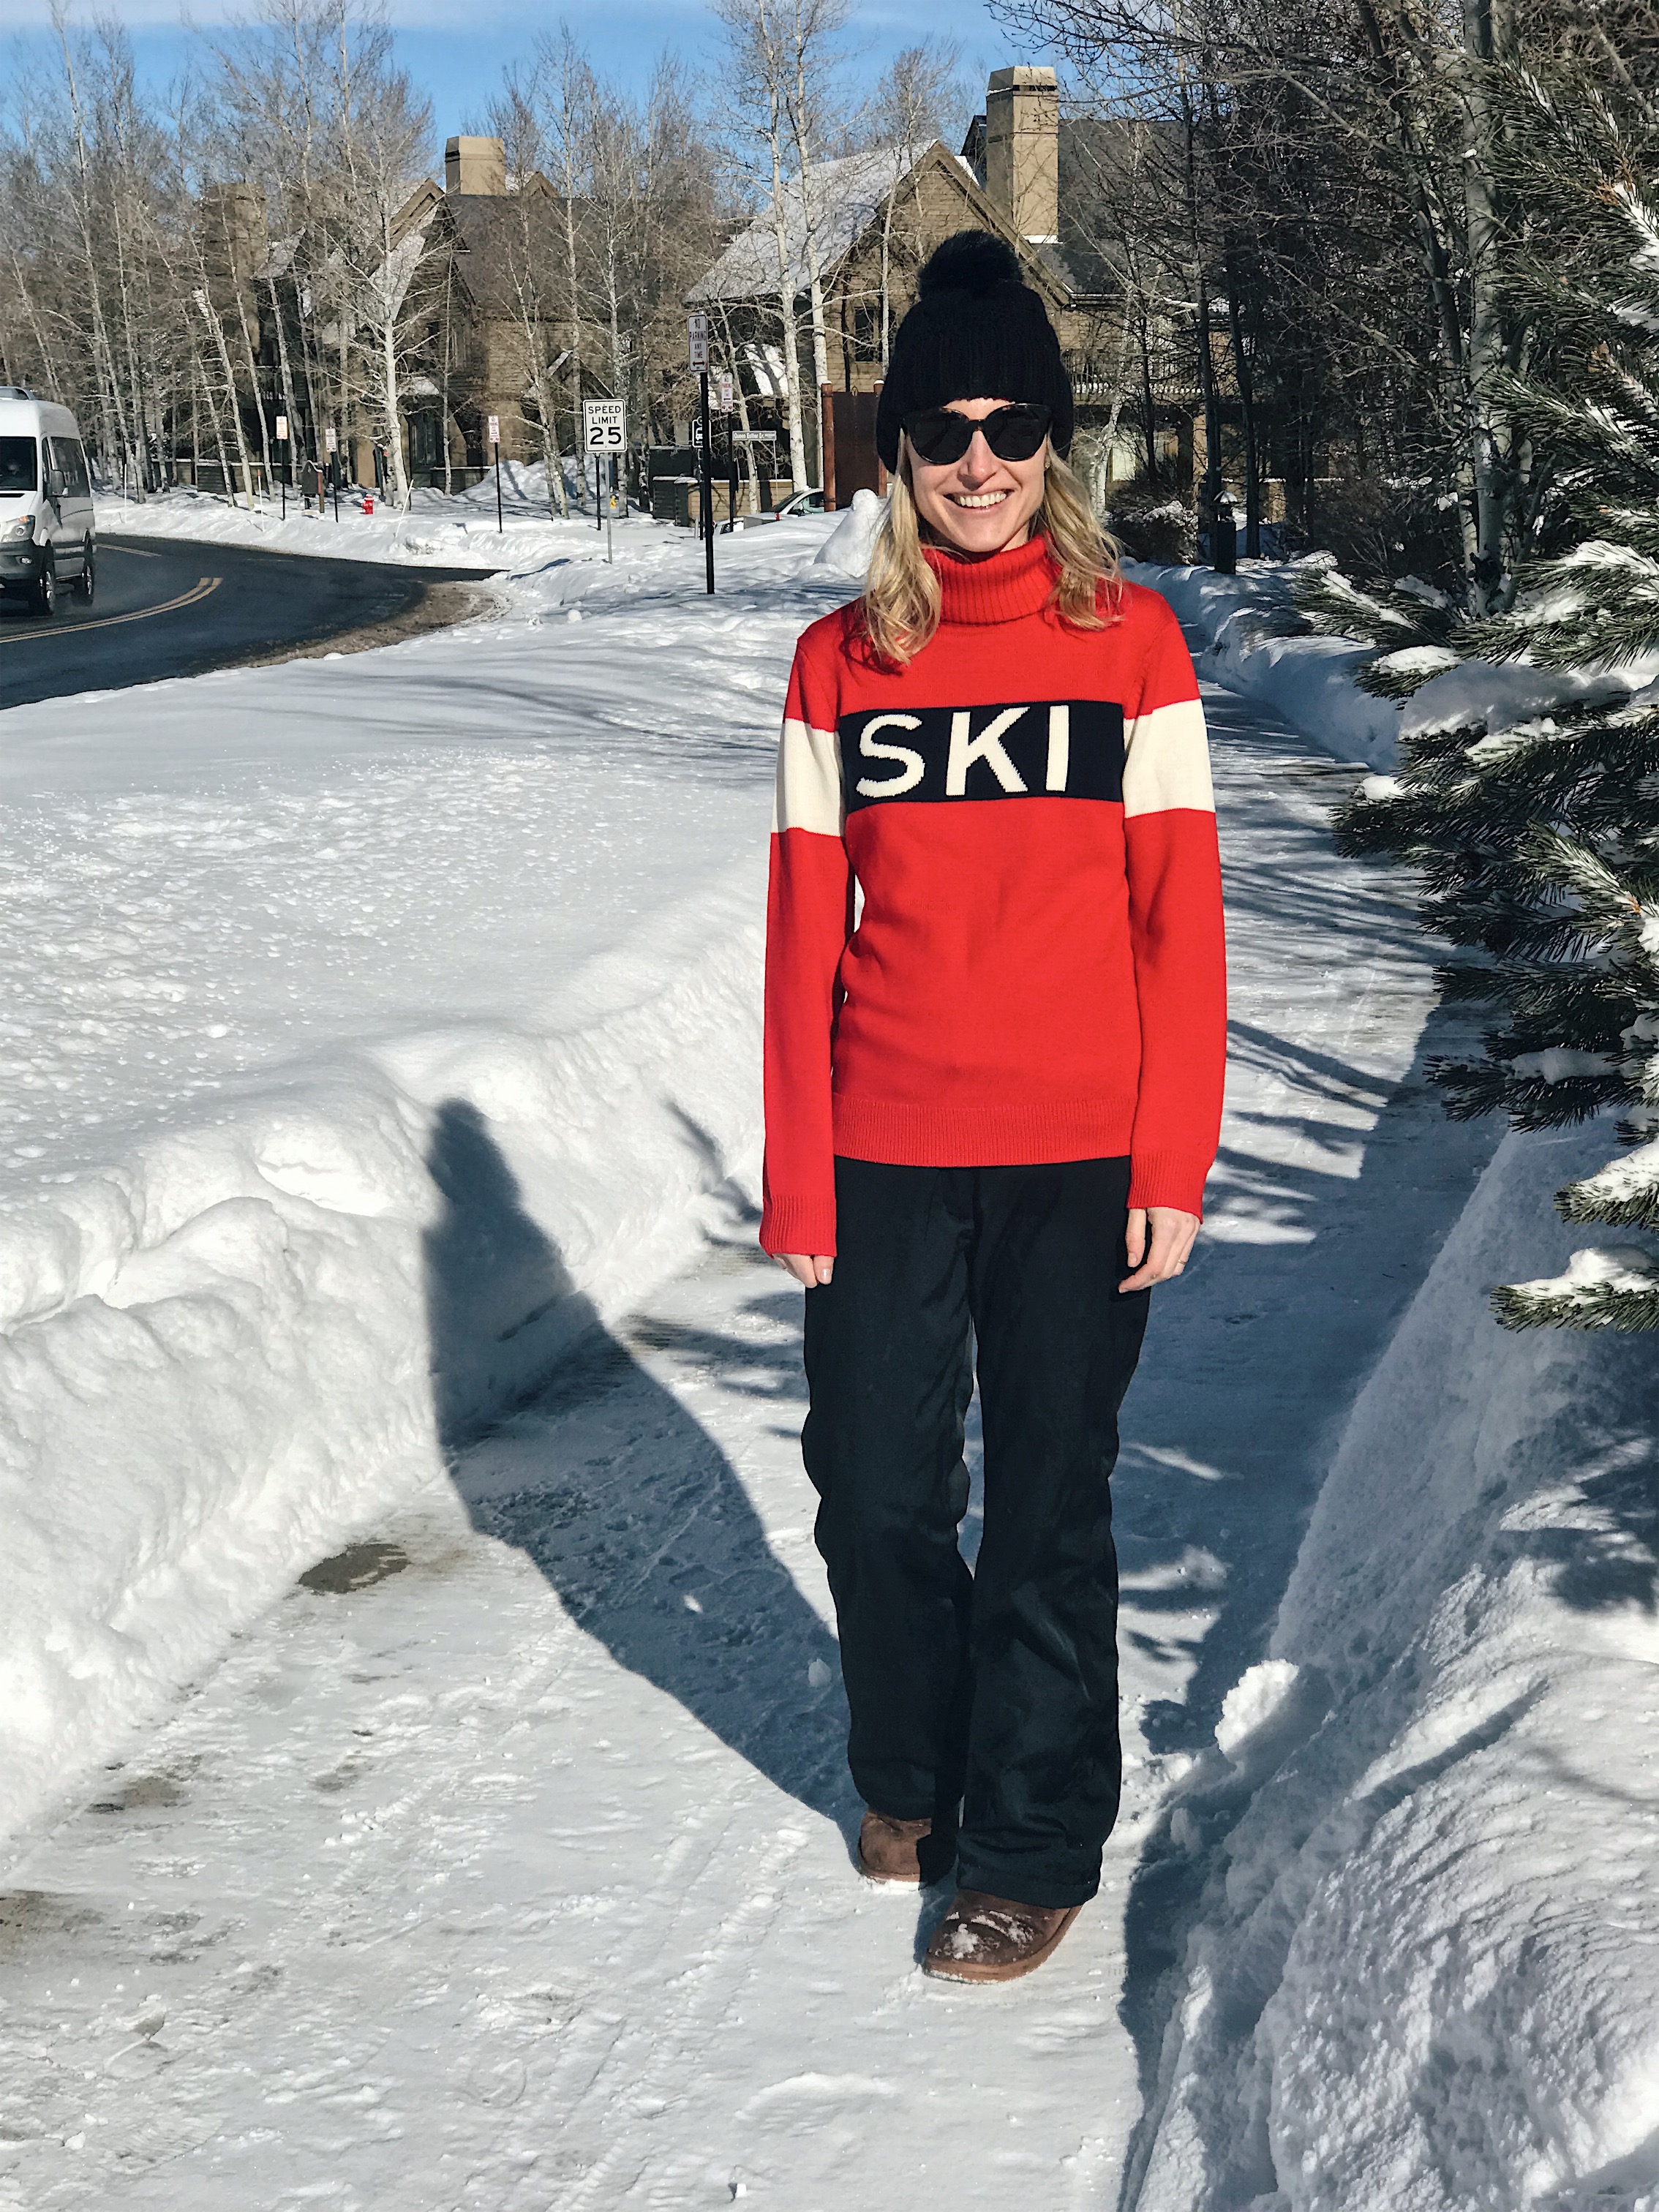 Cette fille aime apres ski jumper sweater top fashion hiver neige cadeau présent